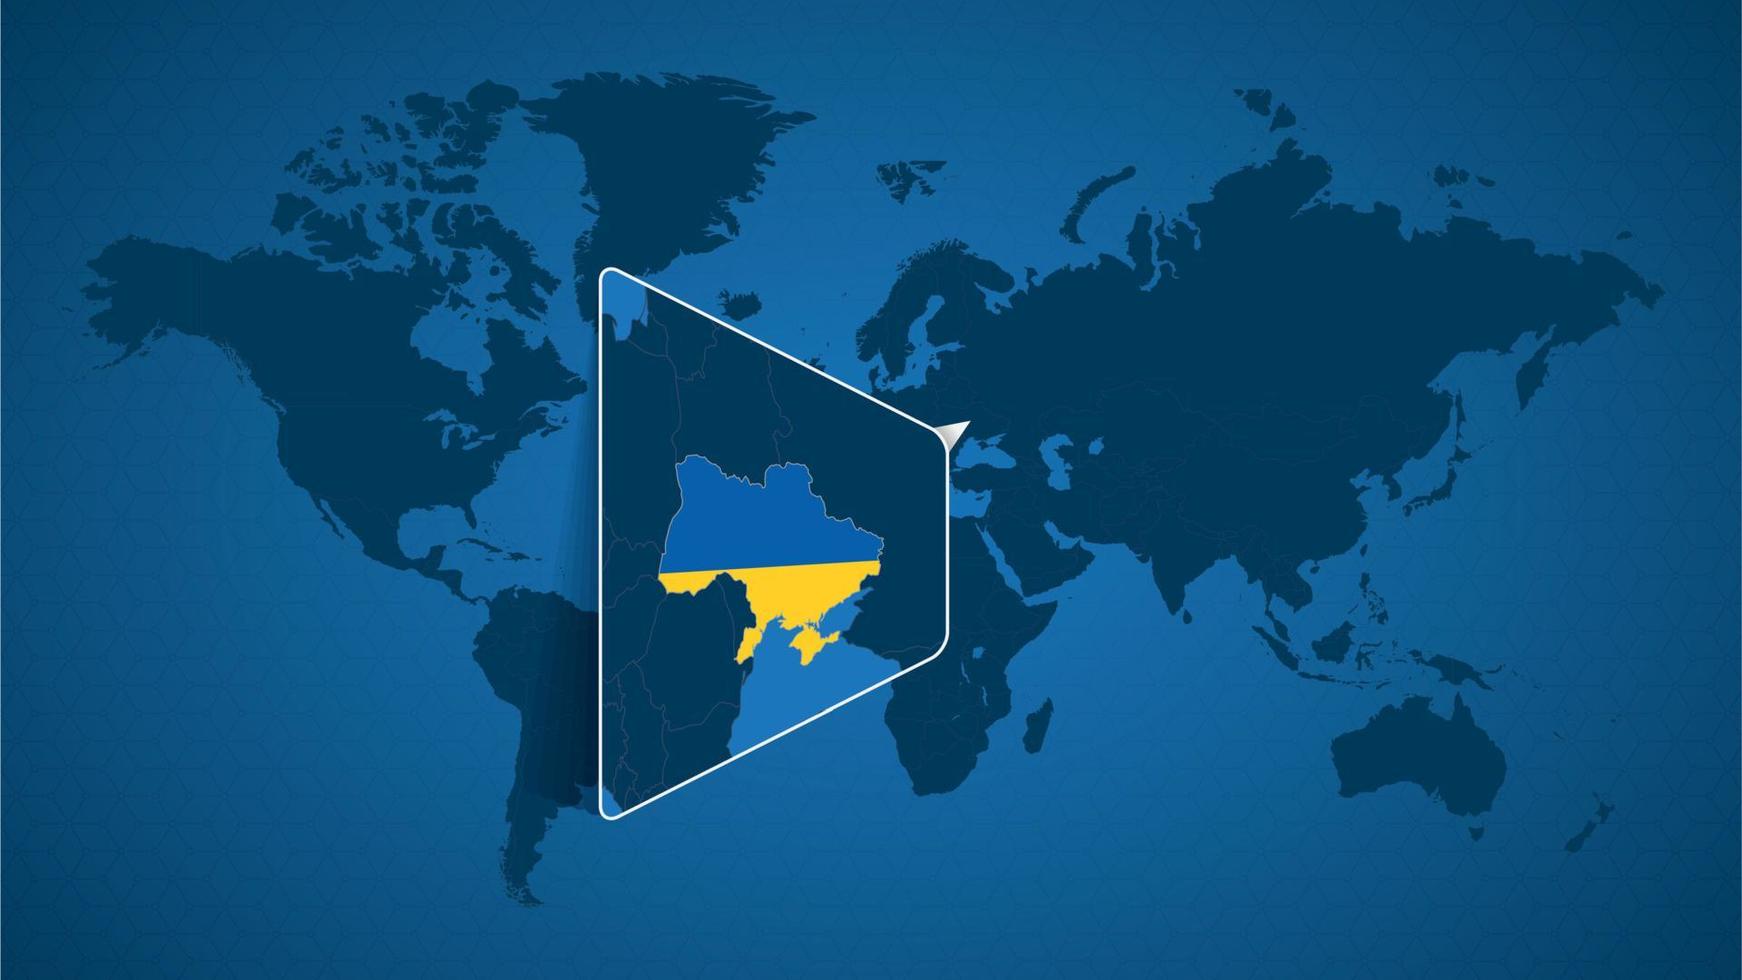 mapa-múndi detalhado com mapa ampliado fixado da ucrânia e países vizinhos. vetor